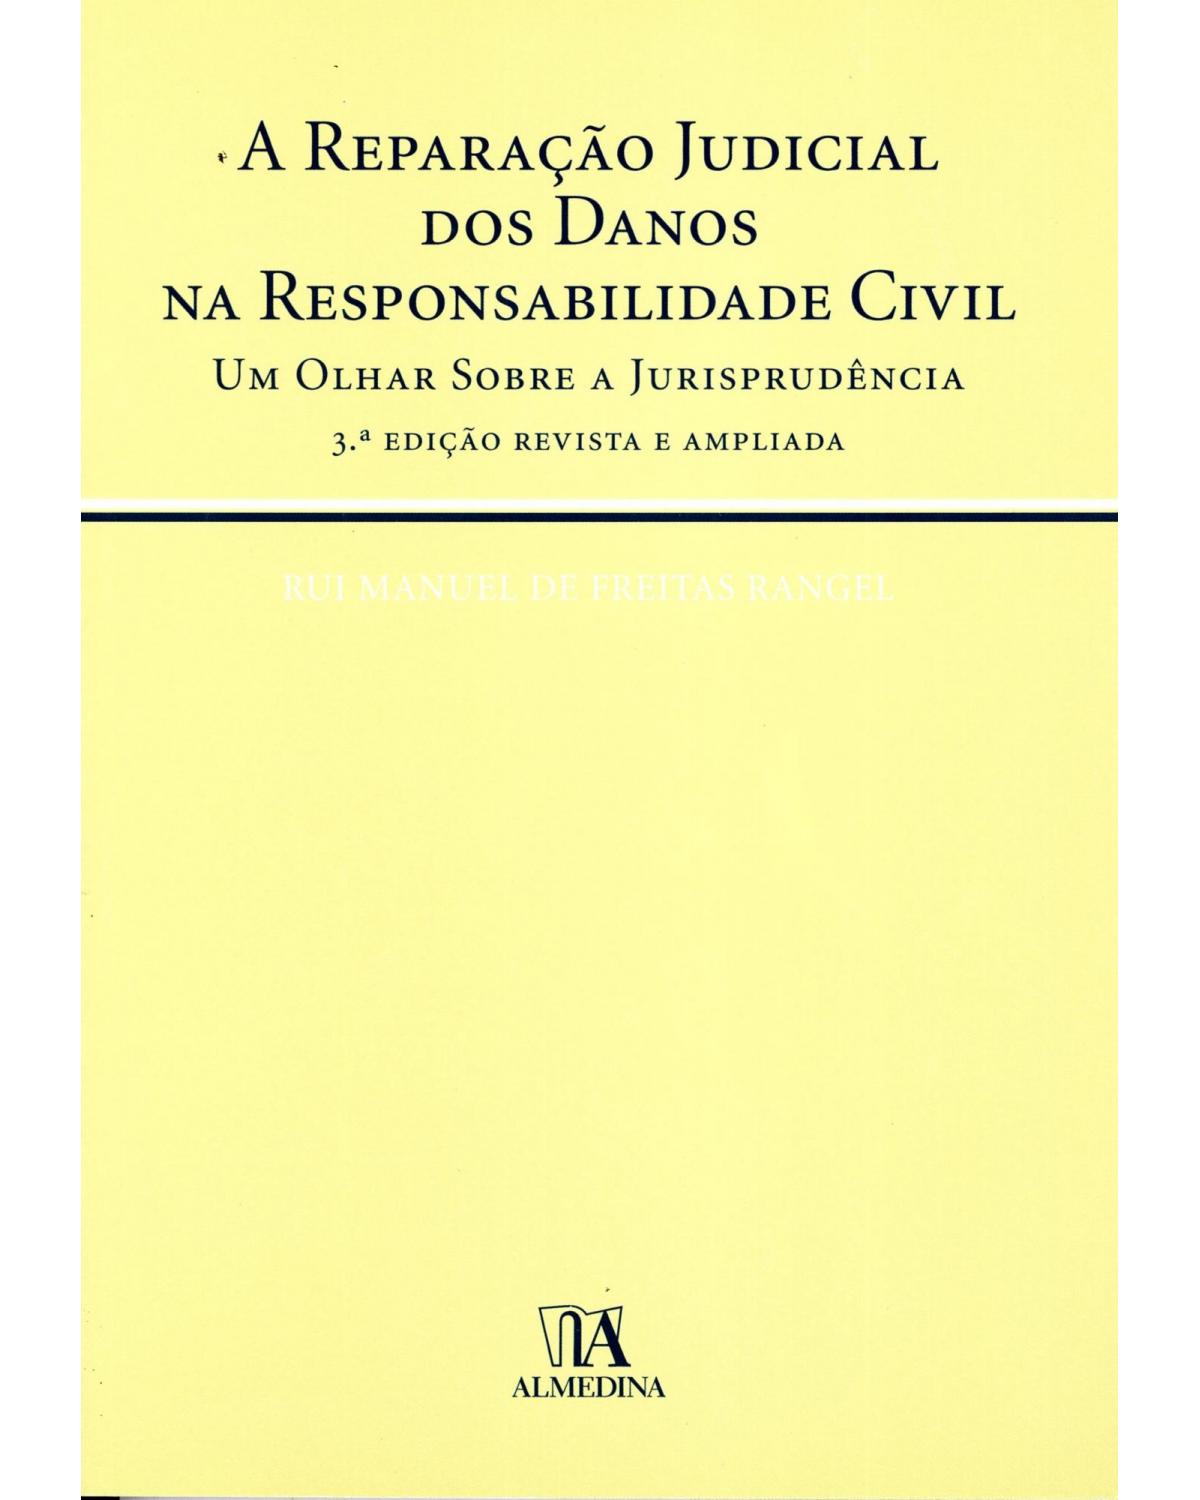 A reparação judicial dos danos na responsabilidade civil - um olhar sobre a jurisprudência - 1ª Edição | 2006